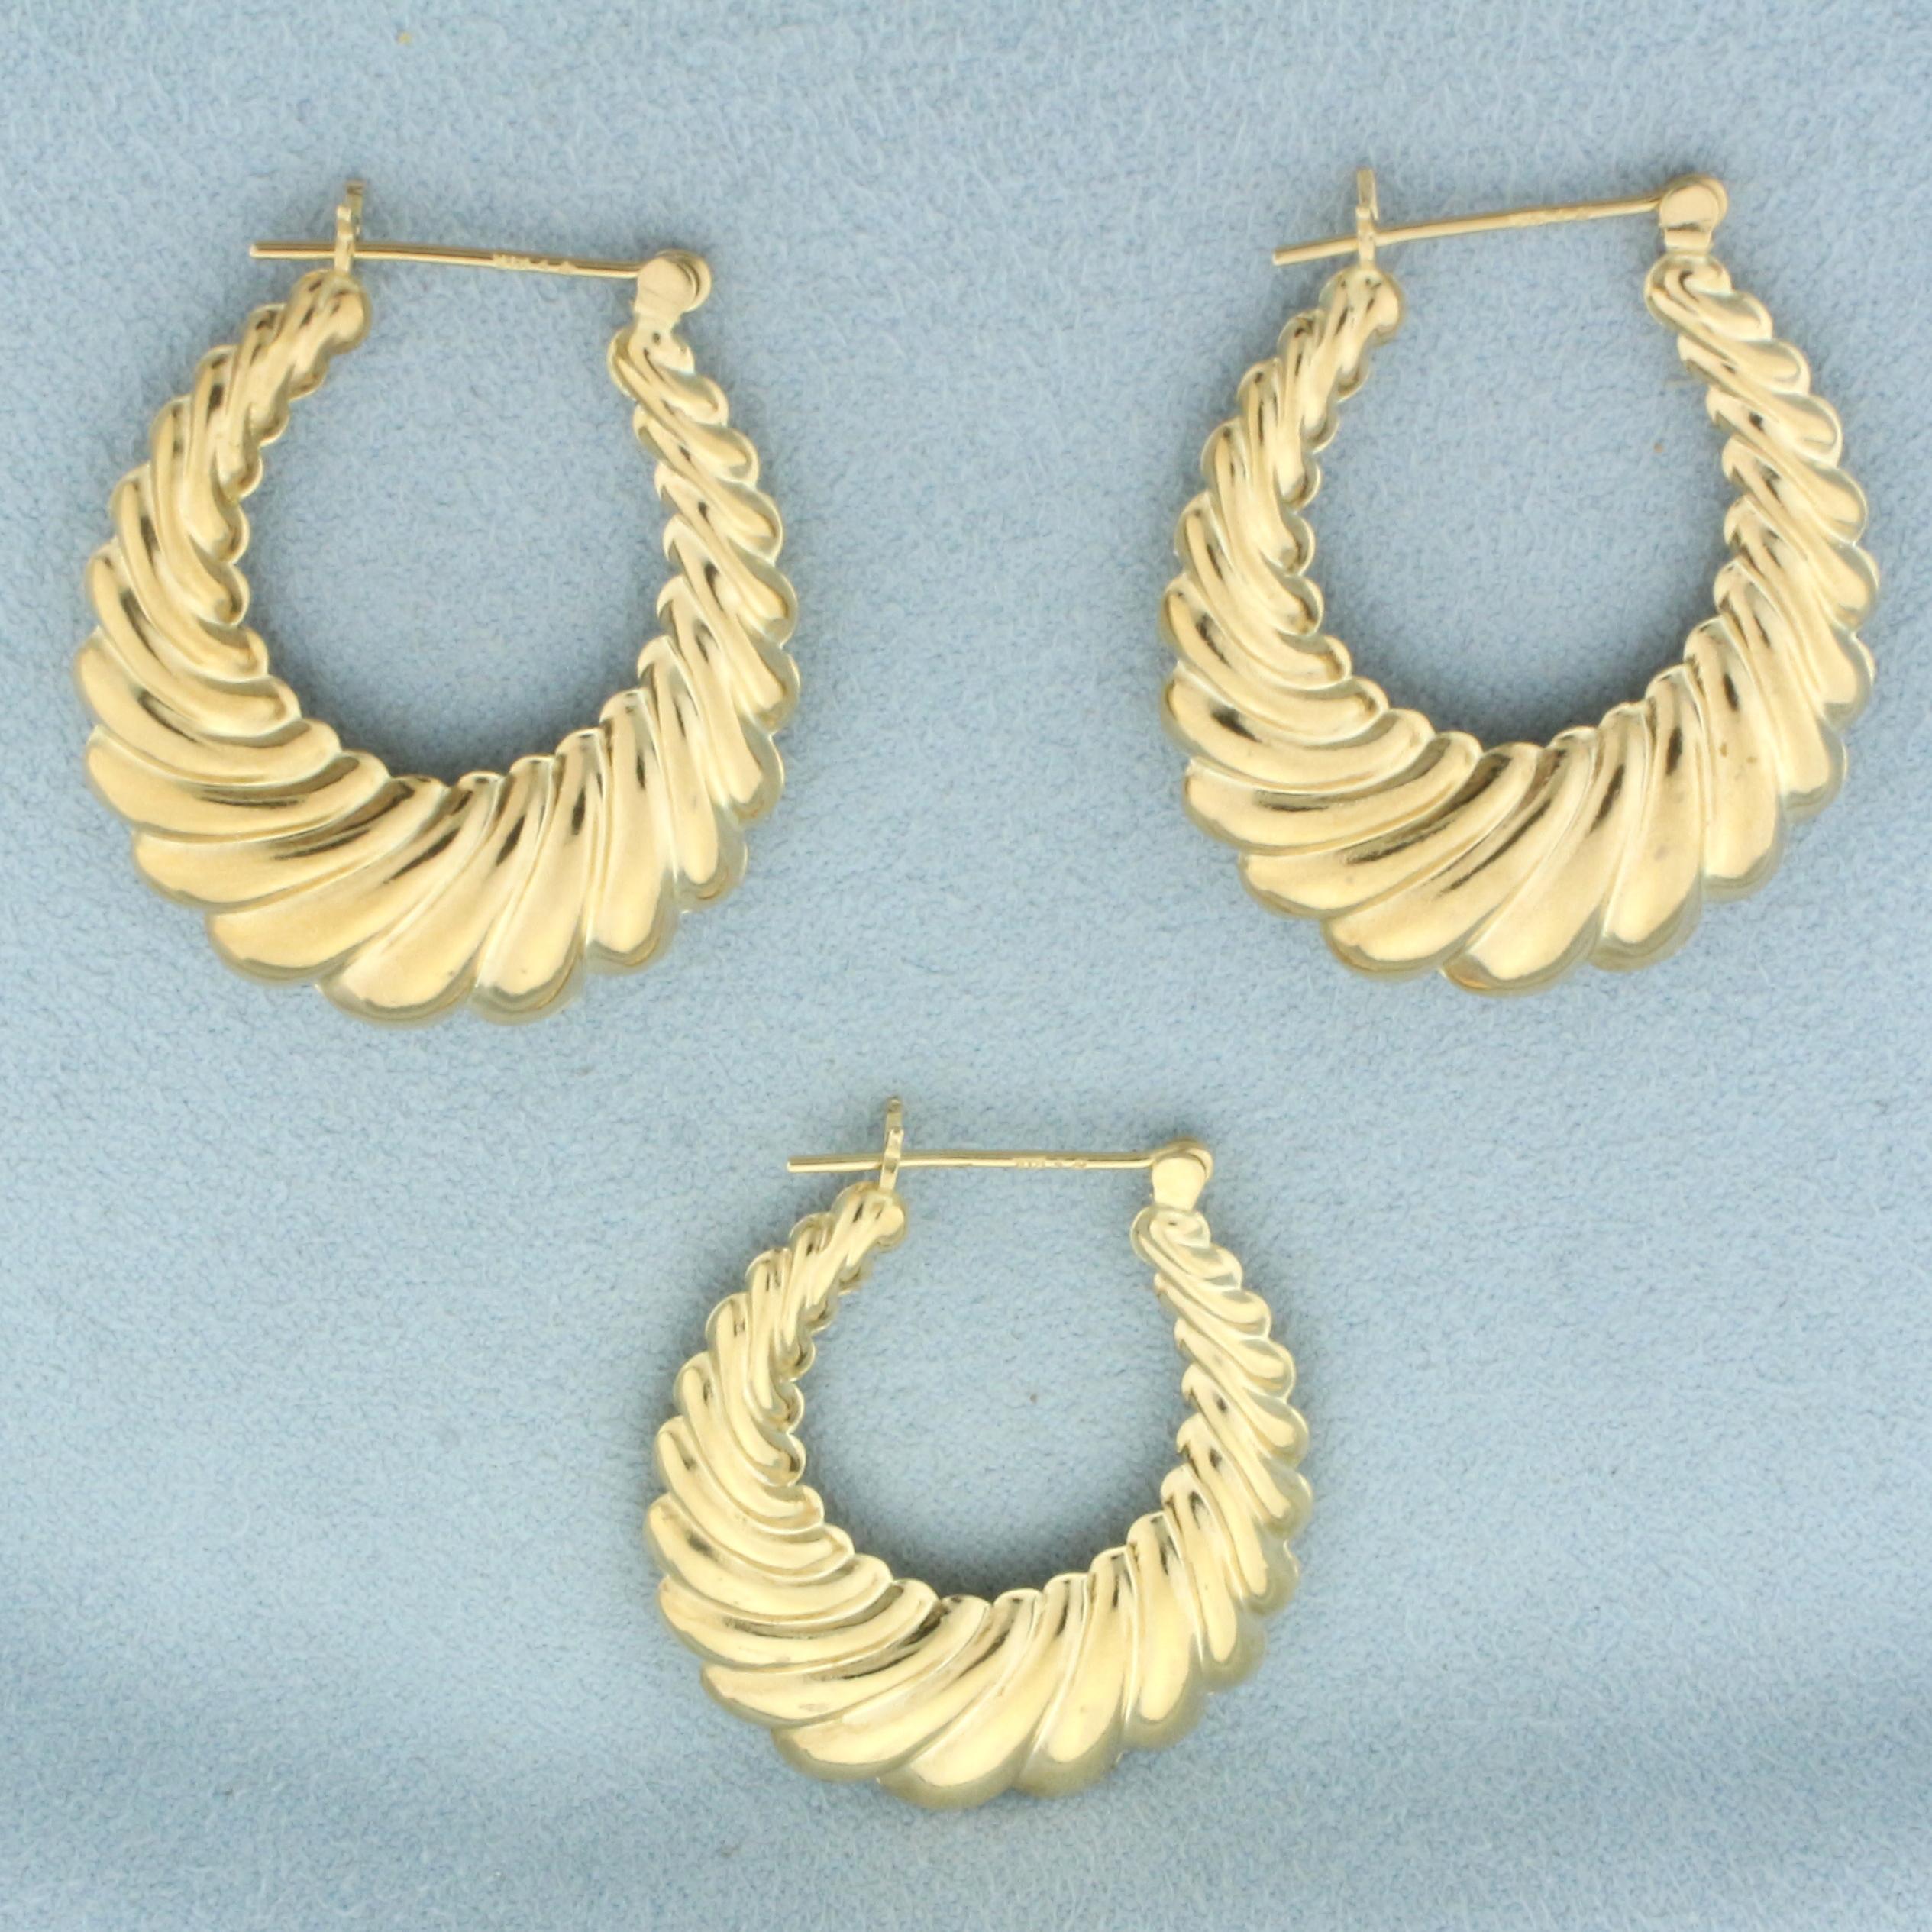 Scalloped Shrimp Hoop Earrings Set Of 3 In 14k Yellow Gold